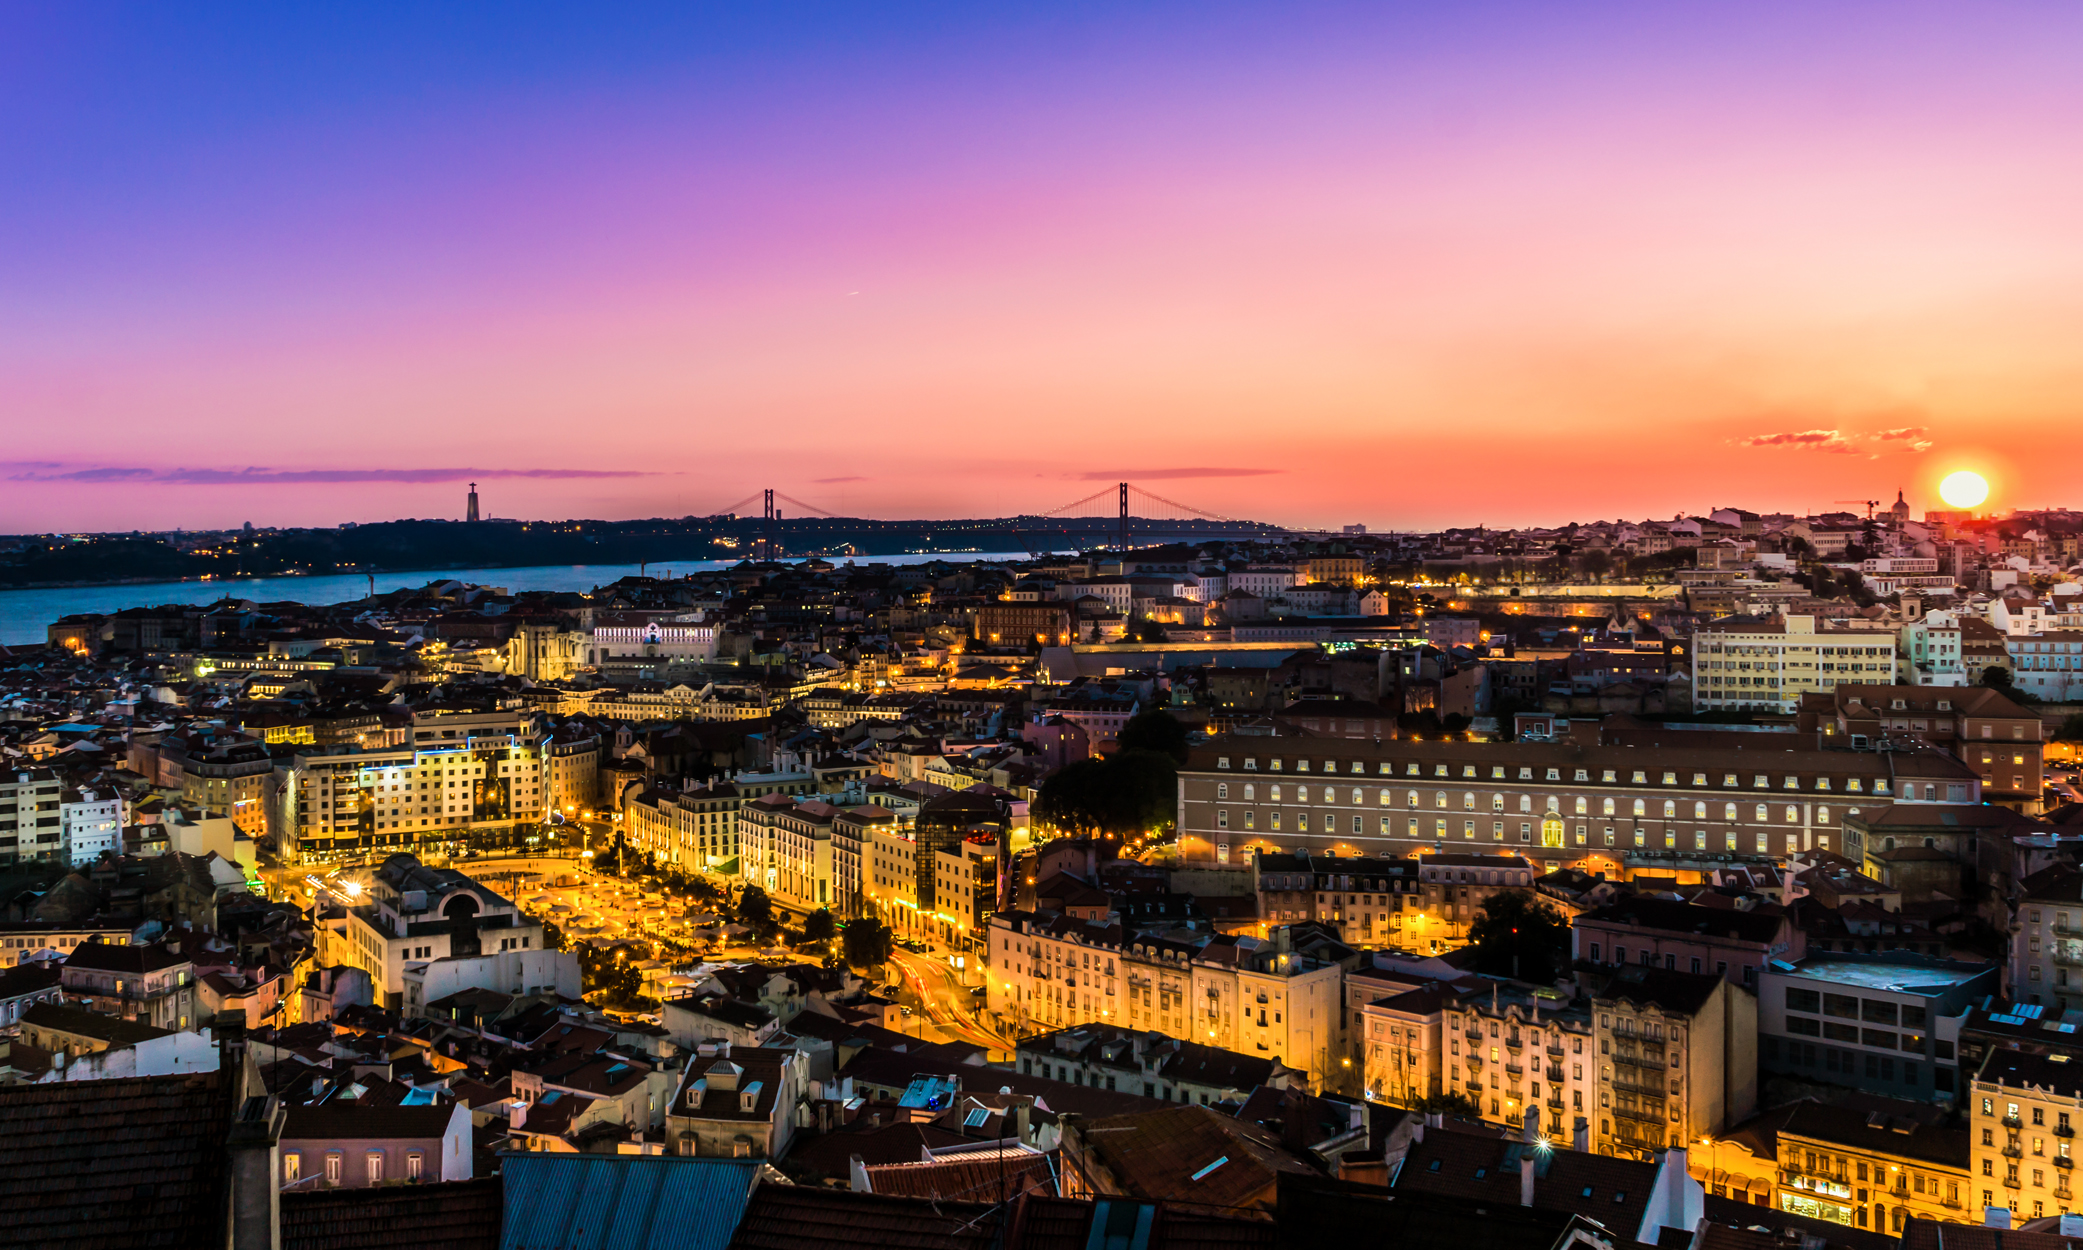 Portugal Golden Visa Reform Delayed After More Housing Bill Veto